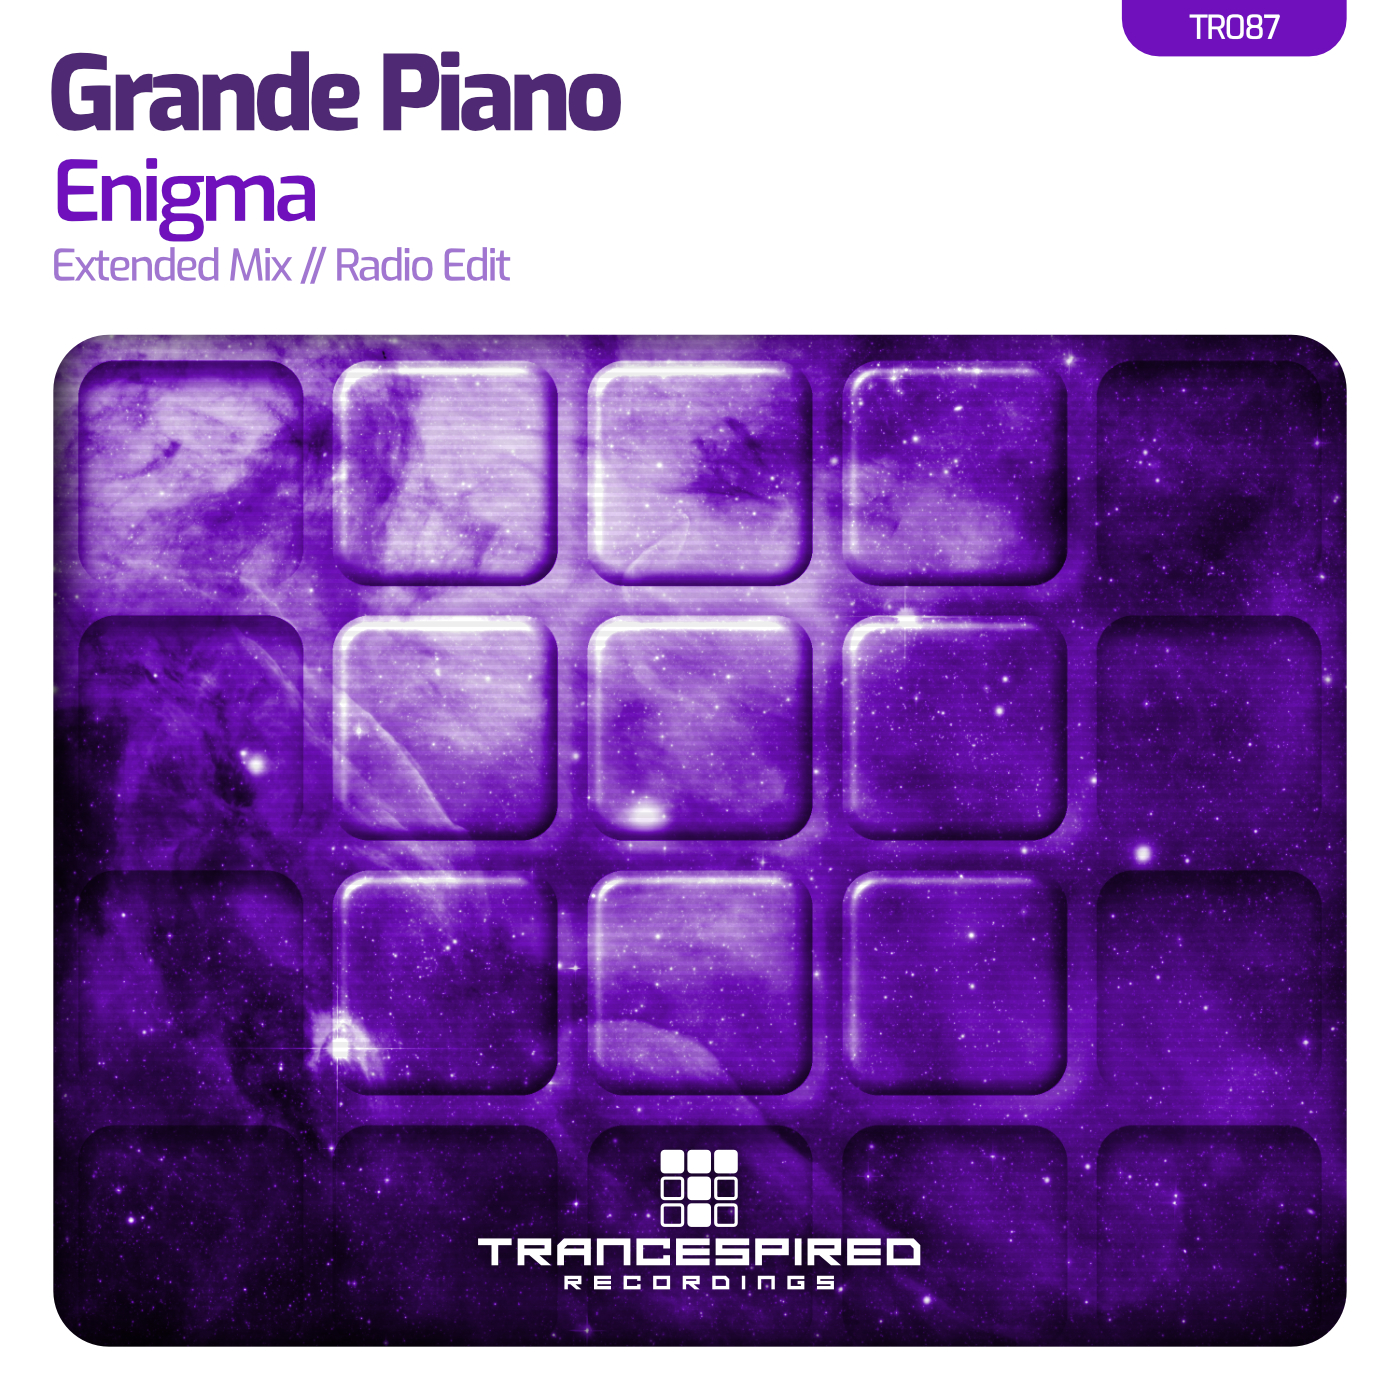 Grande Piano presents Enigma on Trancespired Recordings